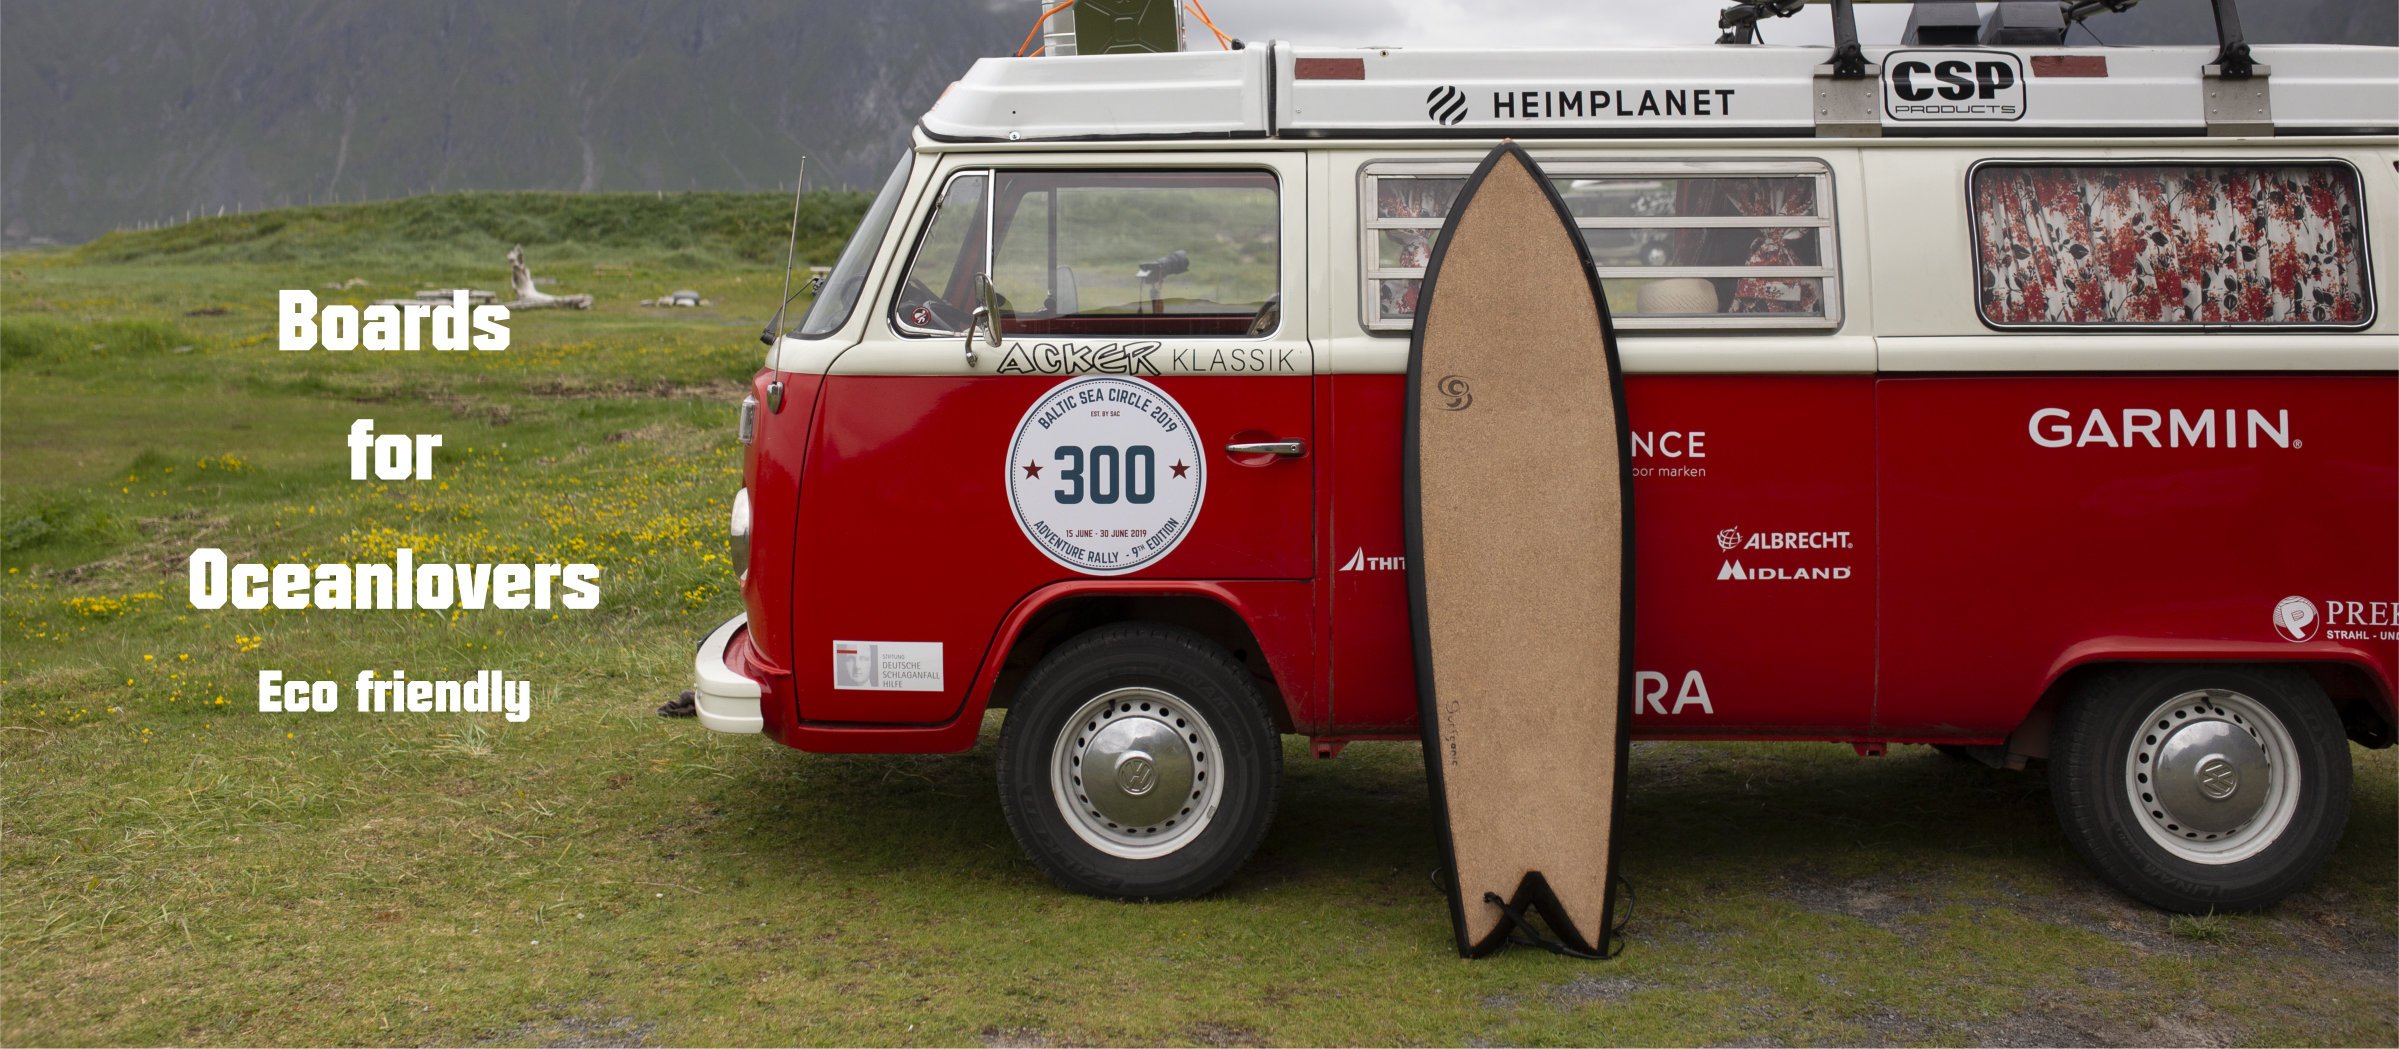 surf glossar surfganic surfboard mit korkdeck